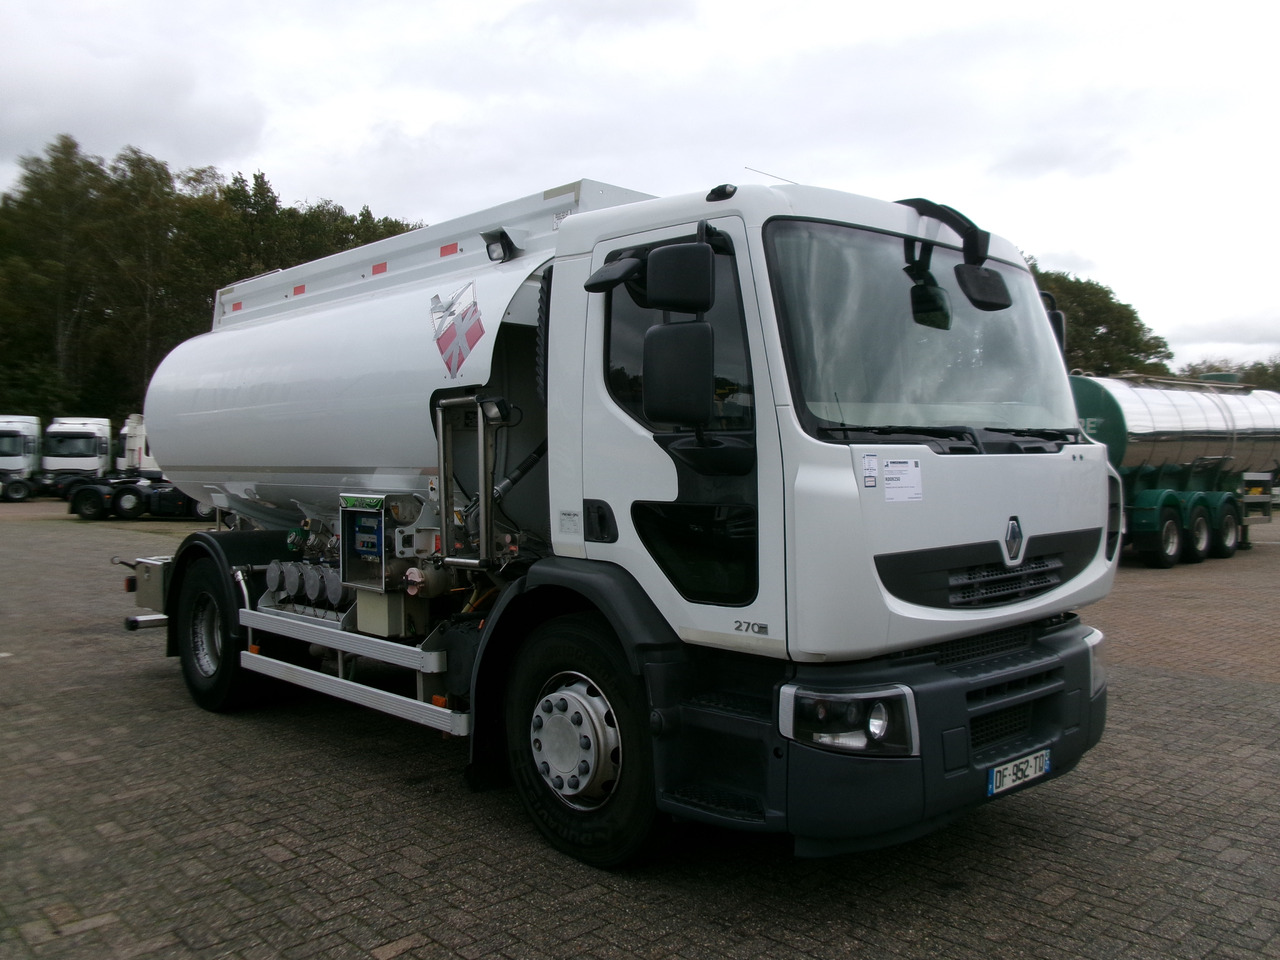 شاحنة صهريج لنقل الوقود Renault Premium 260 4x2 fuel tank 13.8 m3 / 4 comp: صورة 2